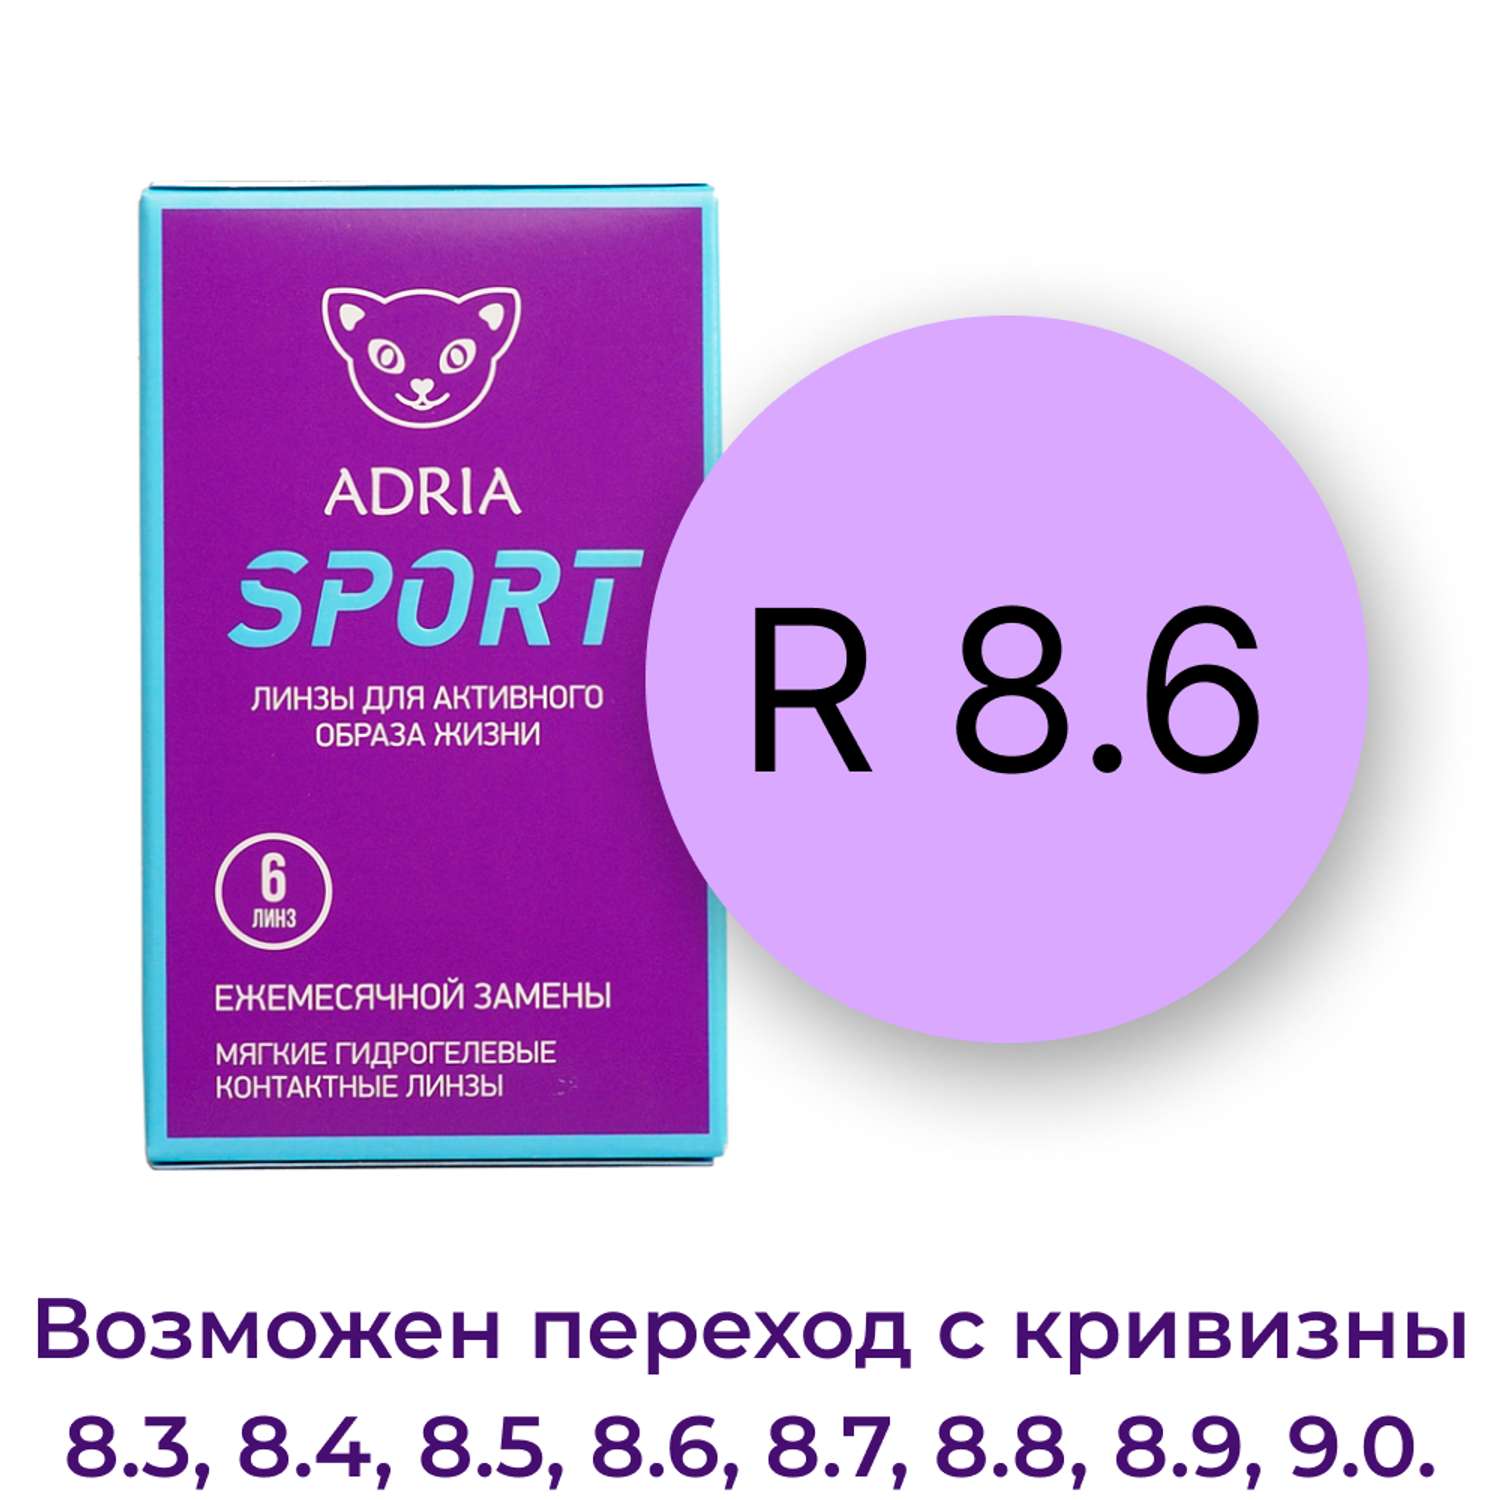 Контактные линзы ADRIA Sport 6 линз R 8.6 -3.00 - фото 3